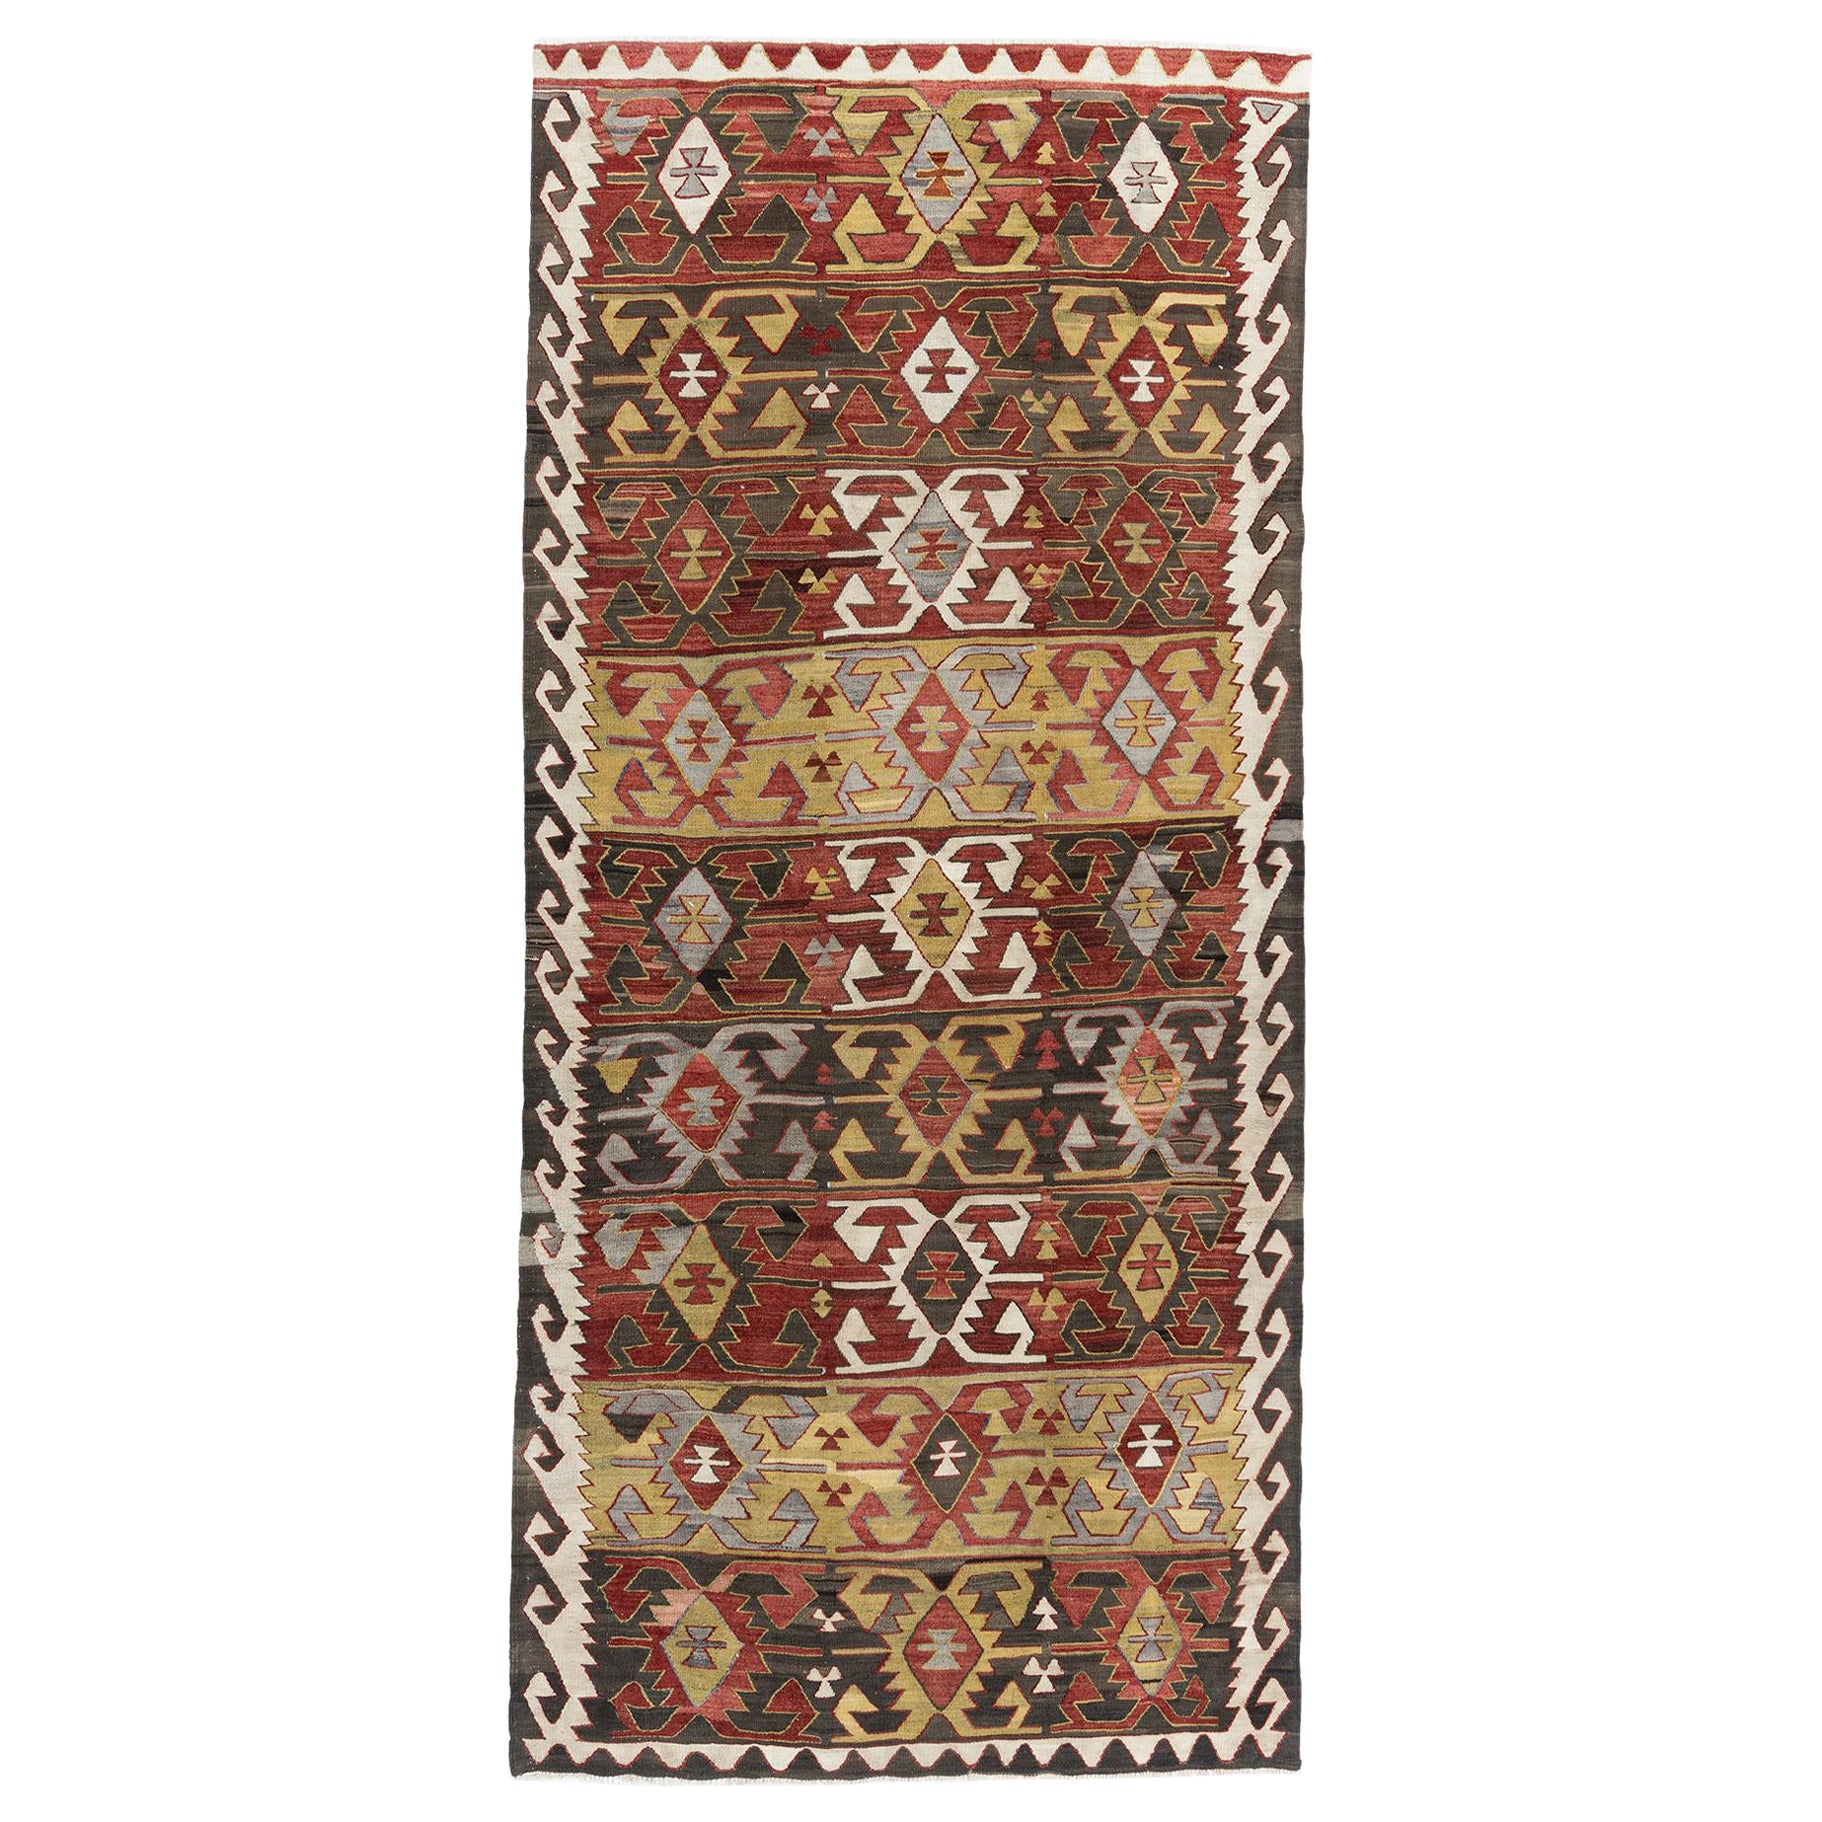 Vintage Cinnamon Turkish Kilim Area Rug  4'3 x 9'5